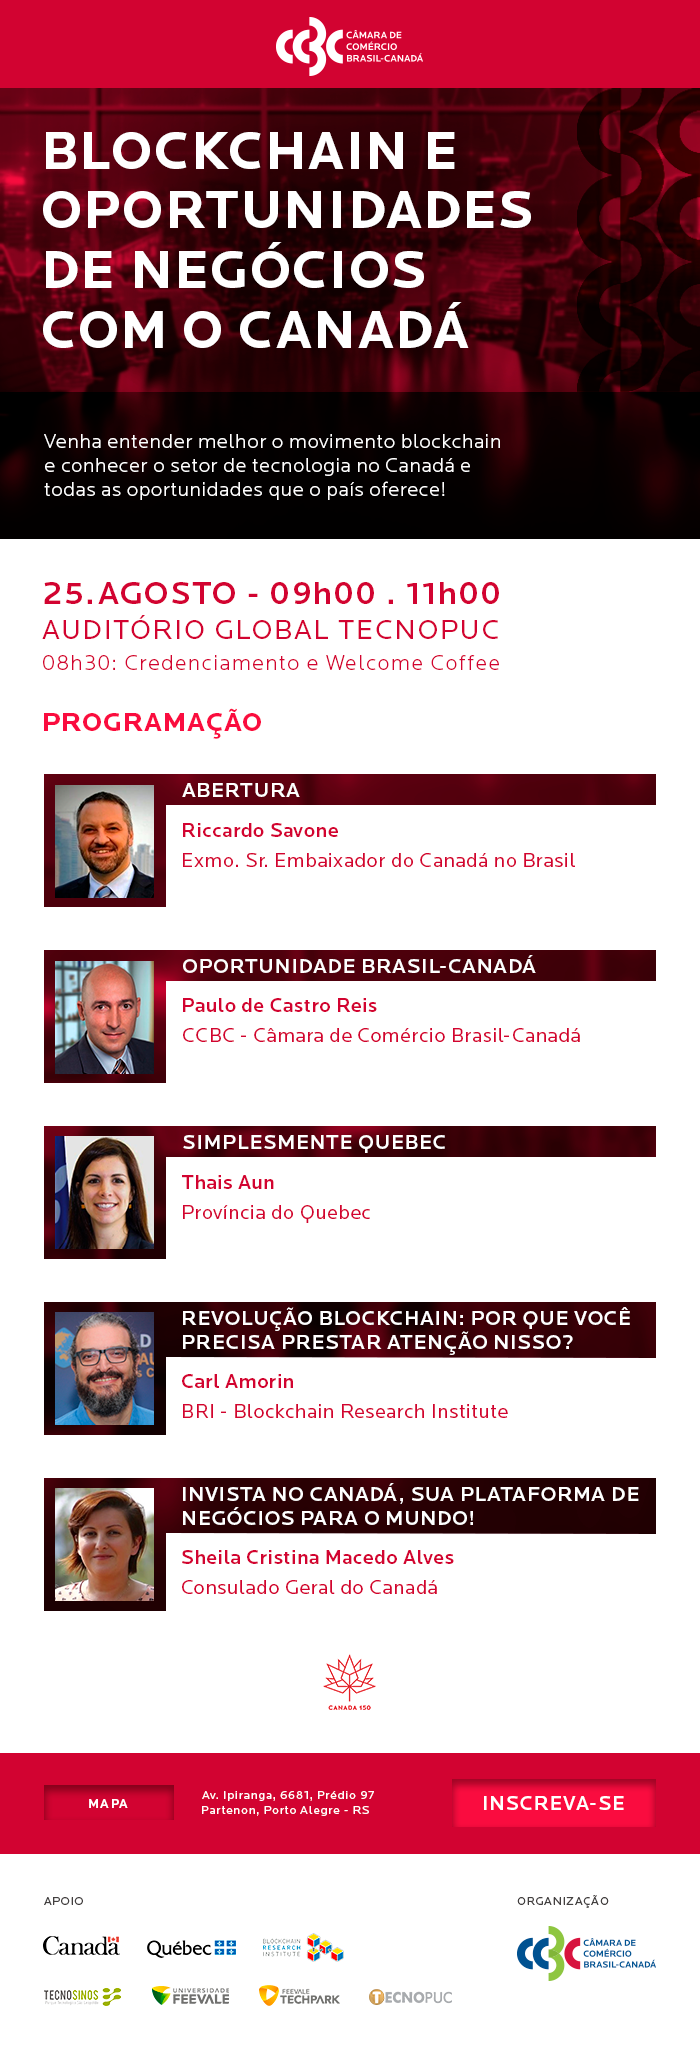 ccbc cam-ccbc brasil-canadá